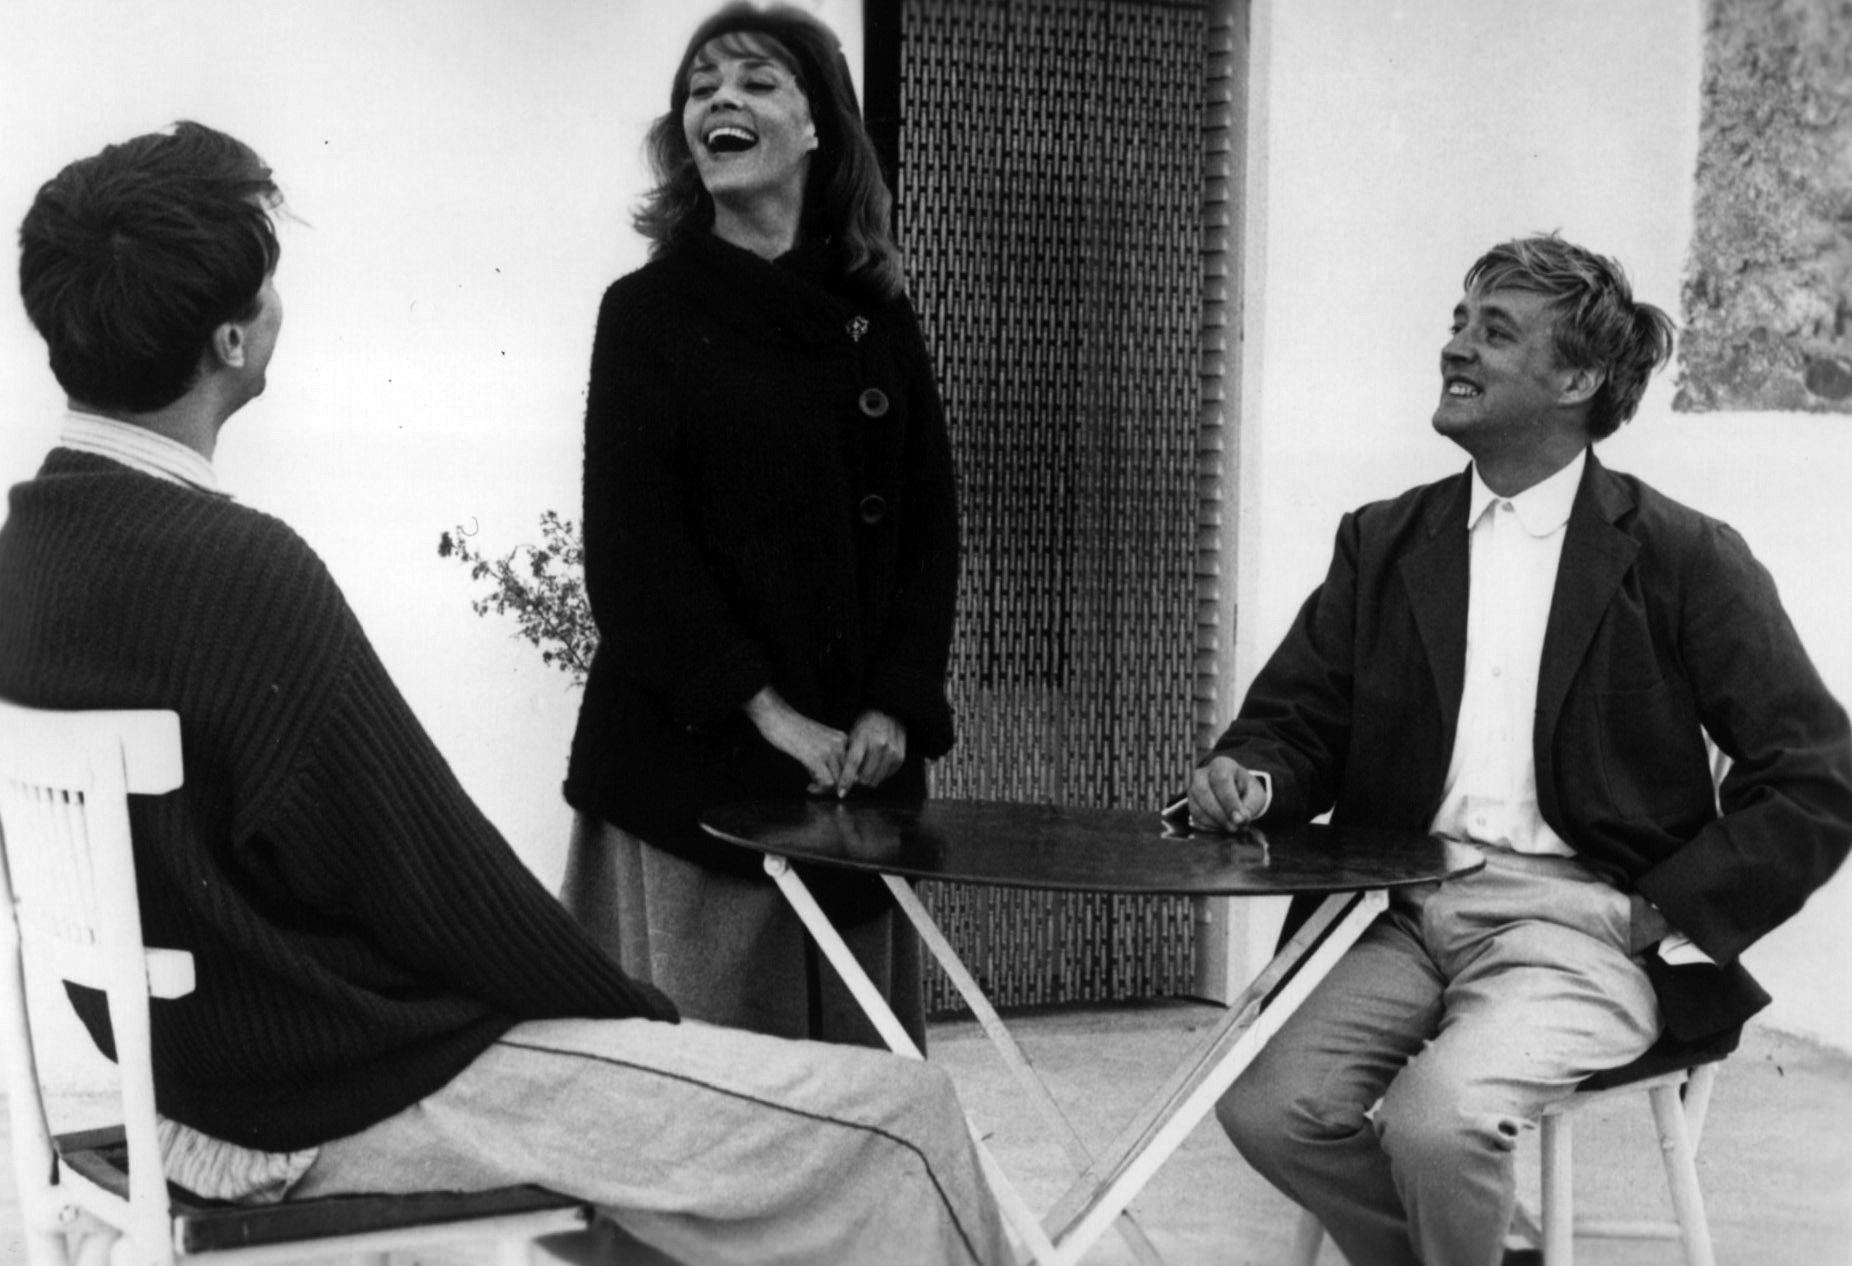 Still of Jeanne Moreau and Oskar Werner in Jules et Jim (1962)